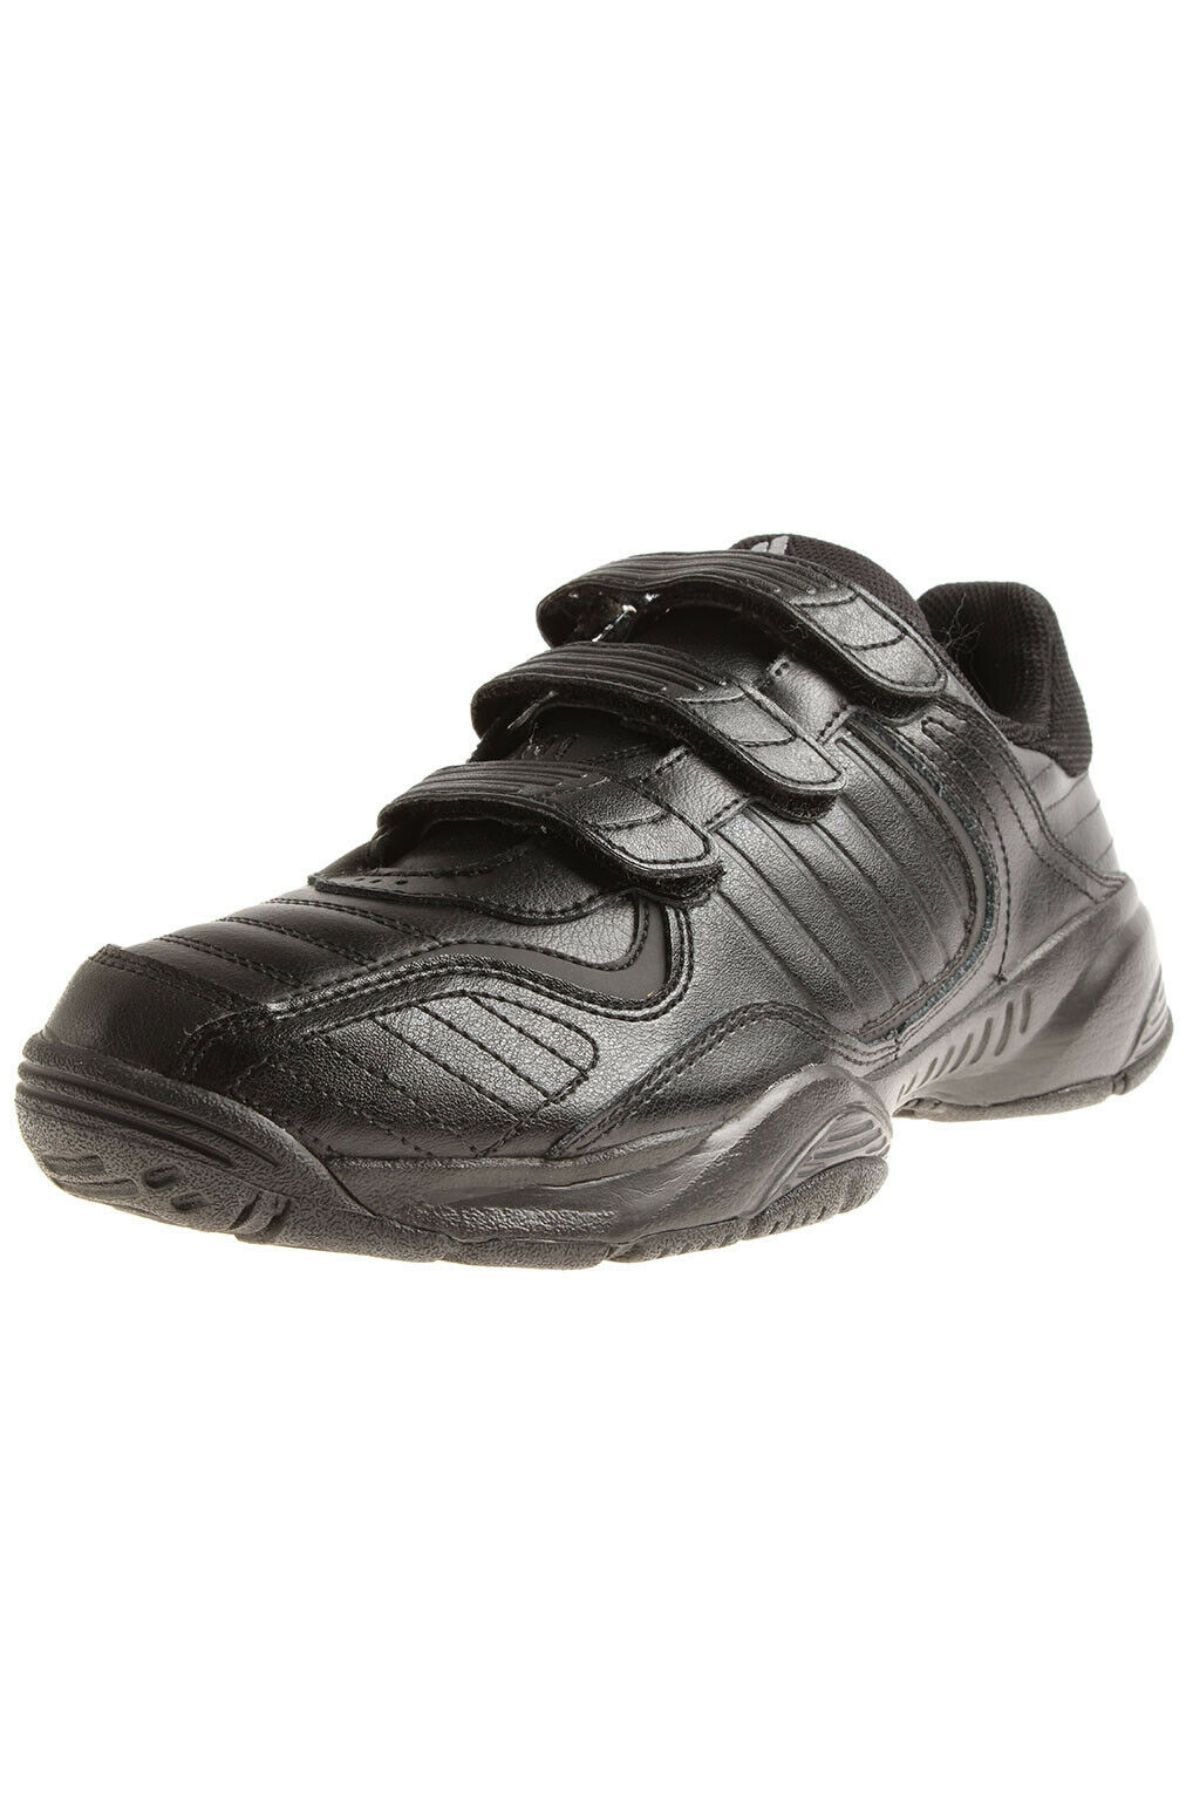 کفش راحتی مردانه سیاه آدیداس VO013850